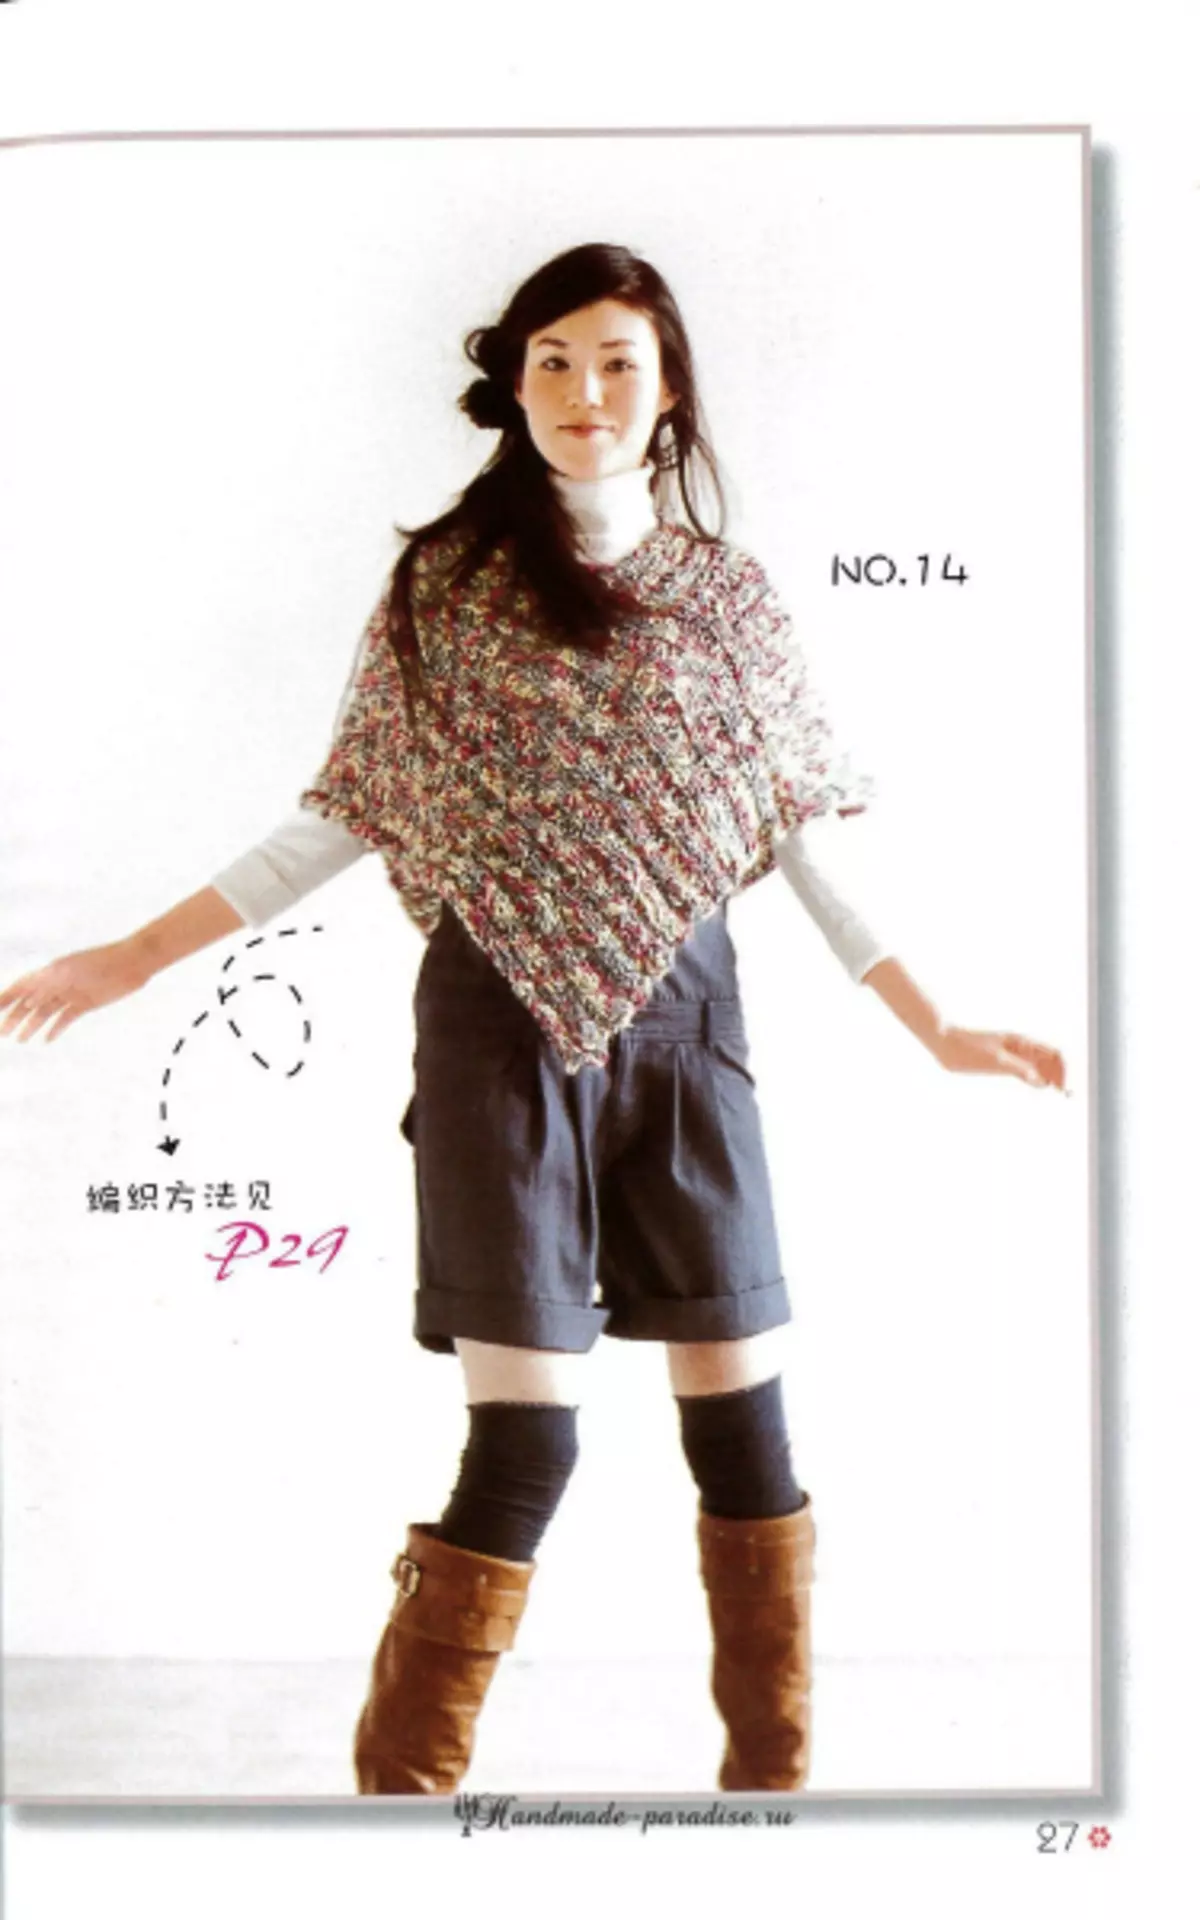 شاولتي، المعطف والرؤوس في مجلة يابانية مع مخططات